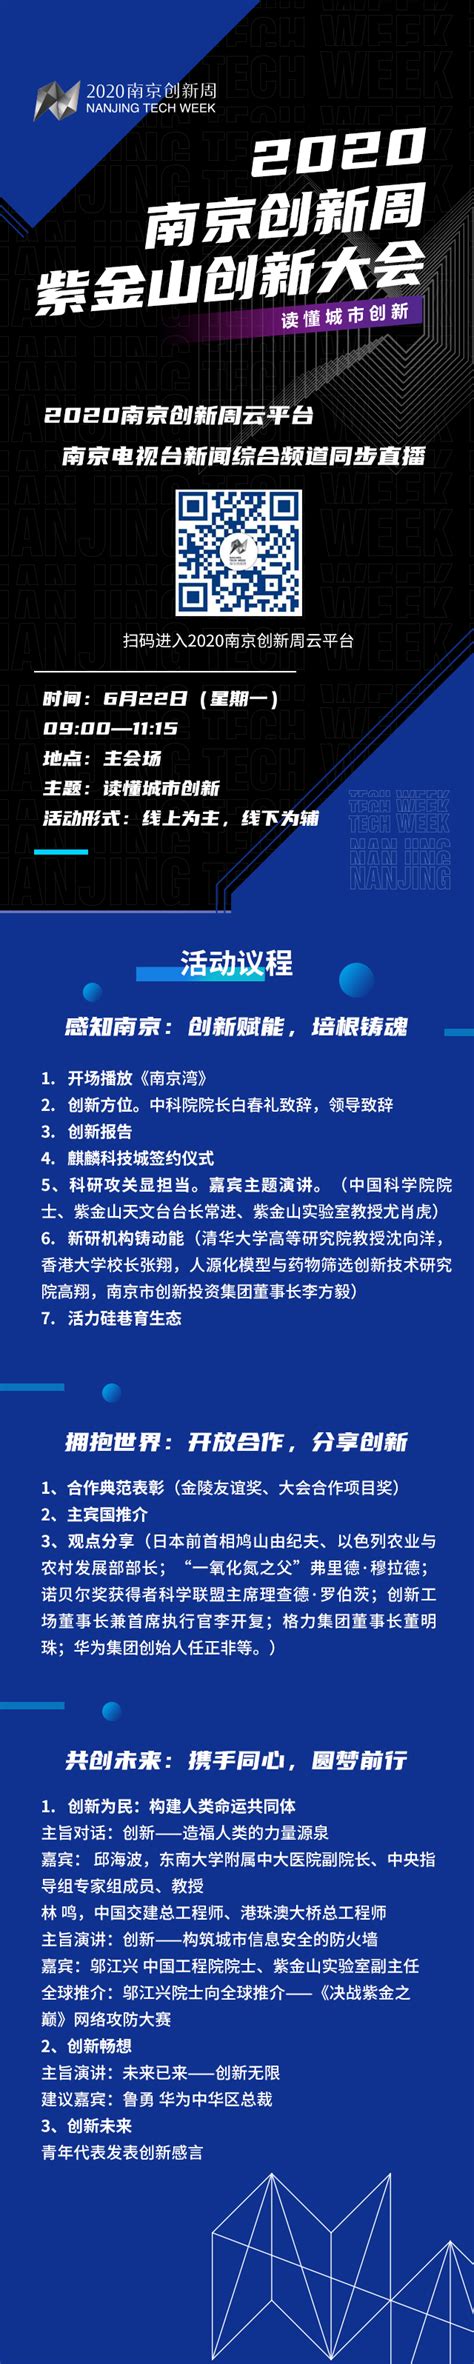 6月22日 2020南京创新周开幕啦_荔枝网新闻